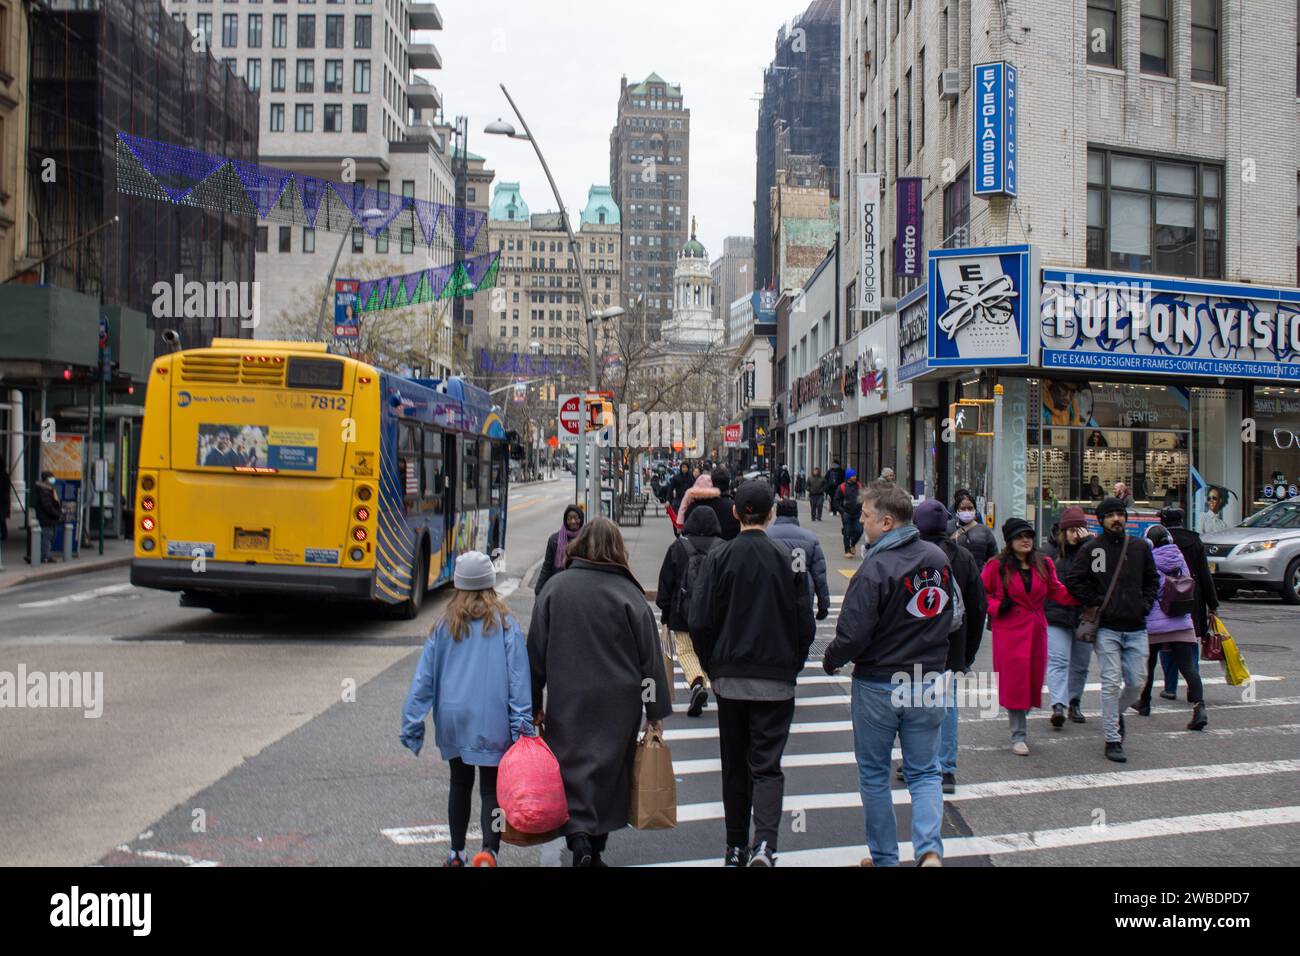 Un autobus scolaire jaune qui descend une rue à côté d'un groupe de personnes à New York, aux États-Unis Banque D'Images